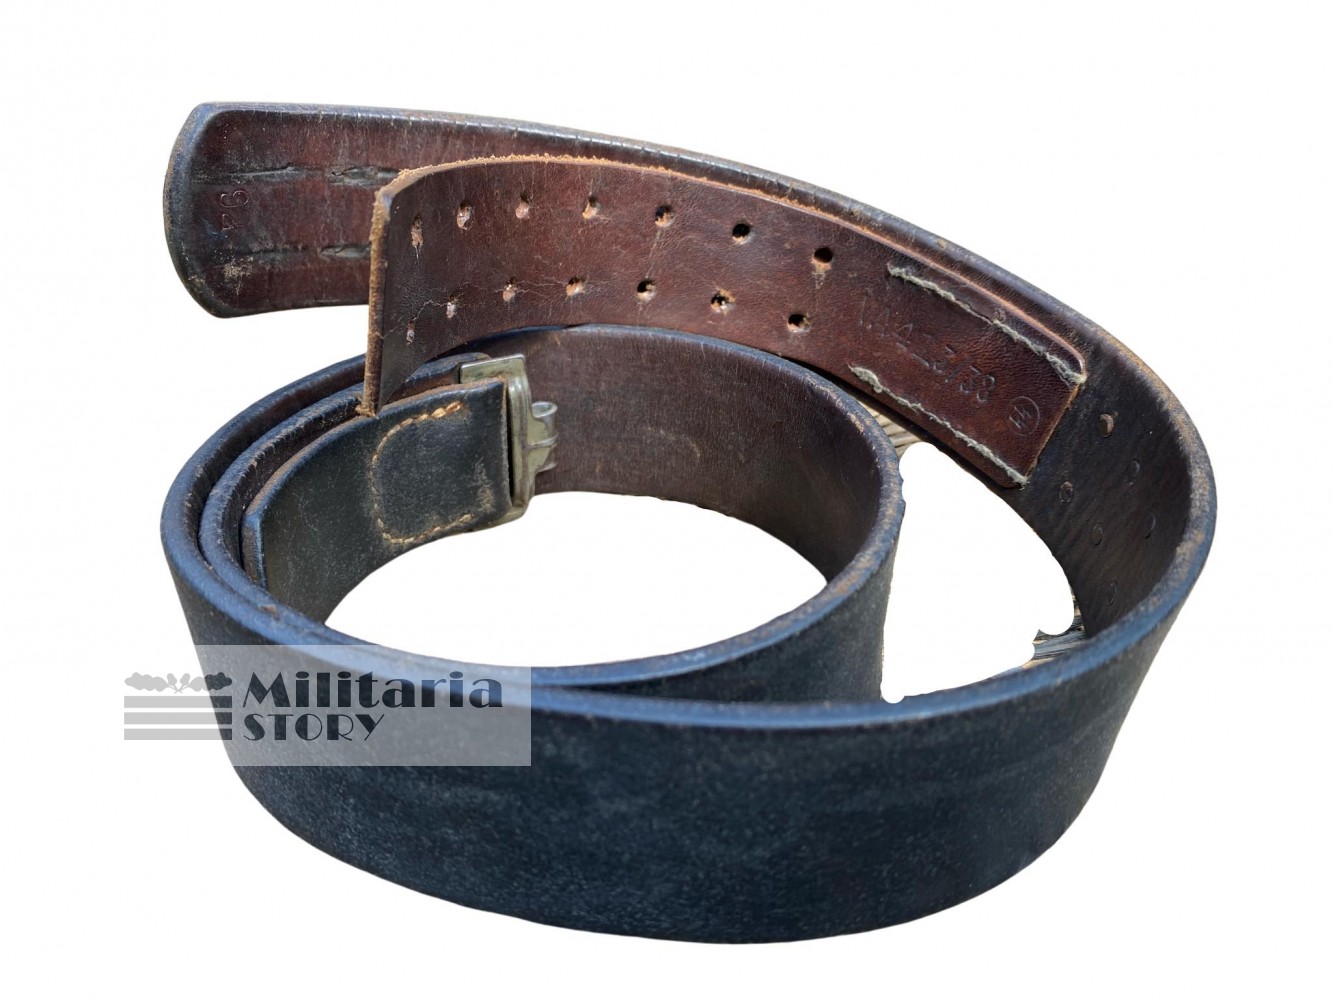 SS-VT belt - SS-VT belt: German Equipment